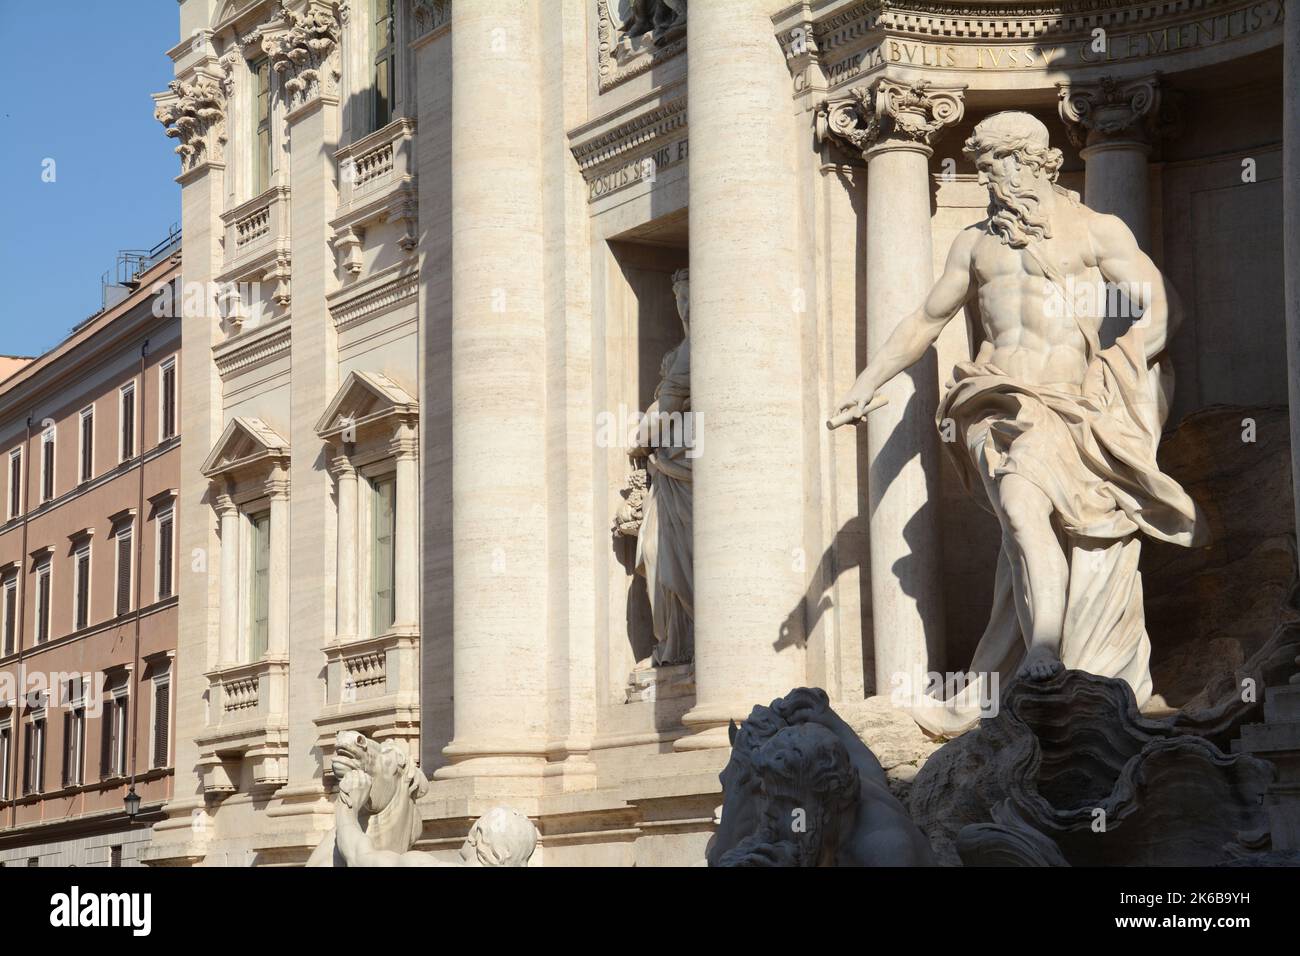 La Fontana di Trevi è la più grande e famosa fontana di Roma. Dettagli della scultura allegorica “salubrità” di Filippo Valle bei dettagli Foto Stock